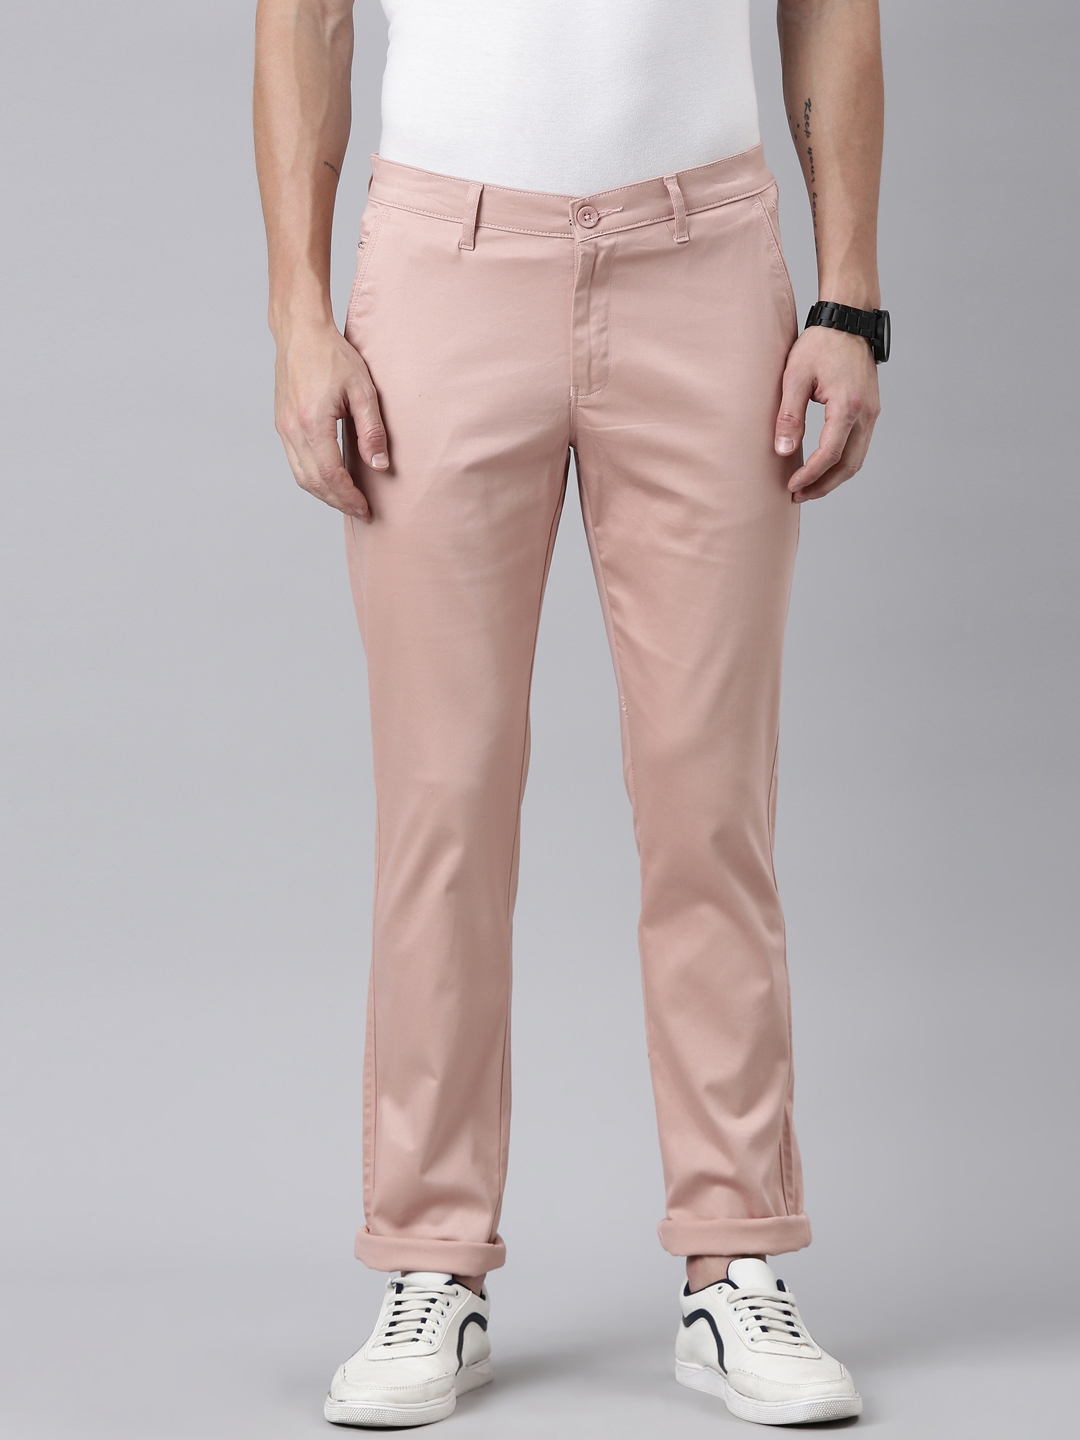 JOE Joseph Abboud Slim Fit Linen Blend Men's Suit Separates Pants Purple -  Size: 42W x 30L - Yahoo Shopping